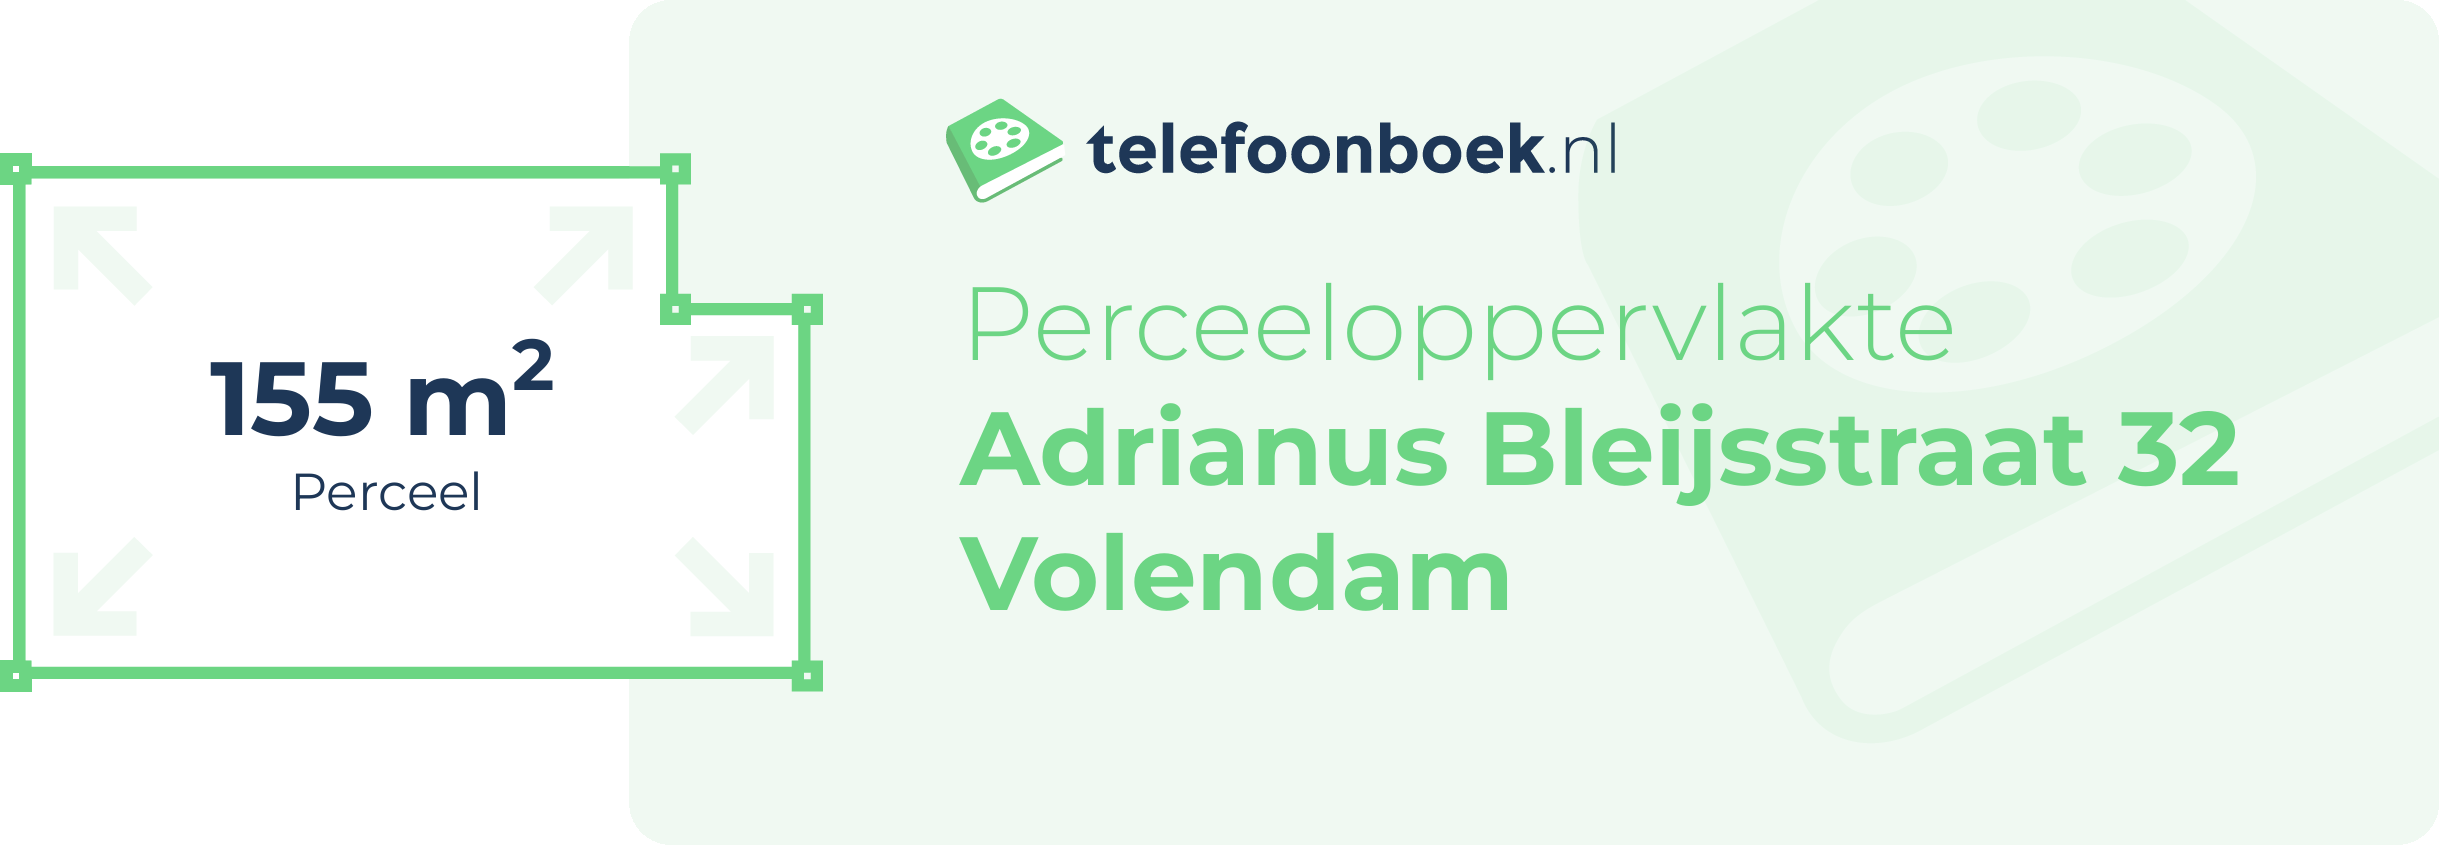 Perceeloppervlakte Adrianus Bleijsstraat 32 Volendam